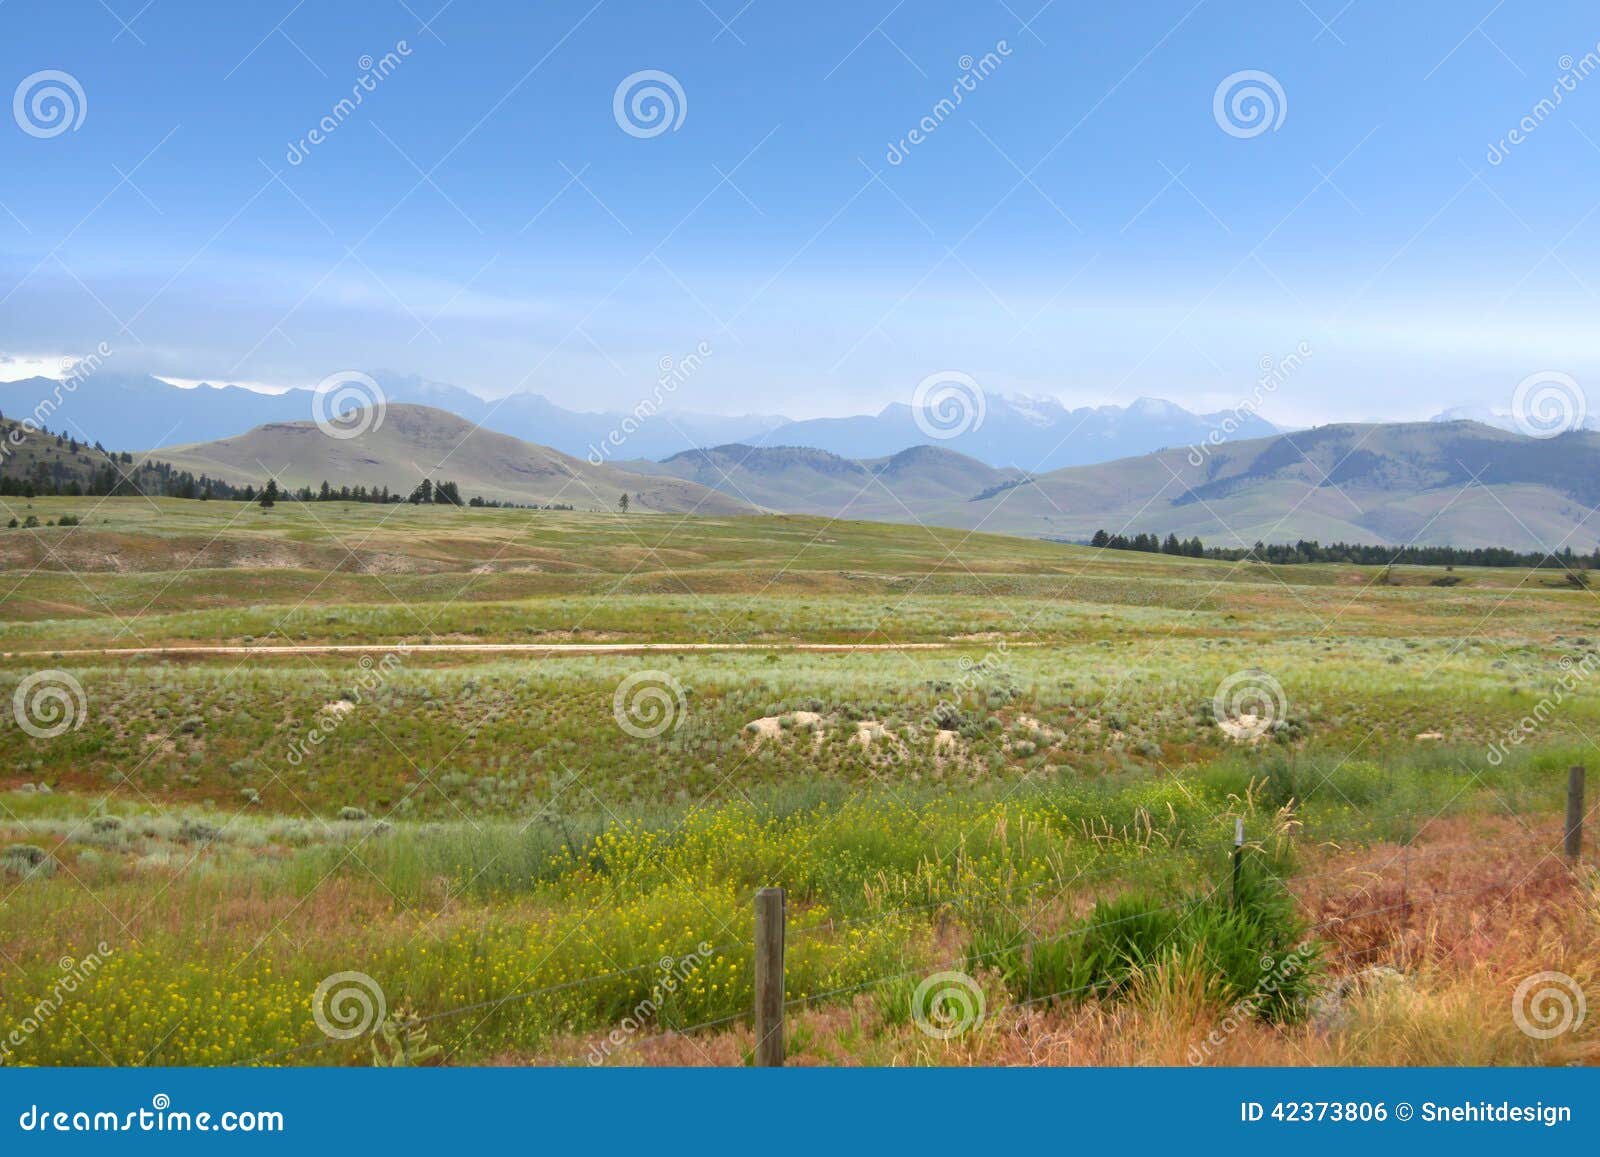 beautiful montana landscape